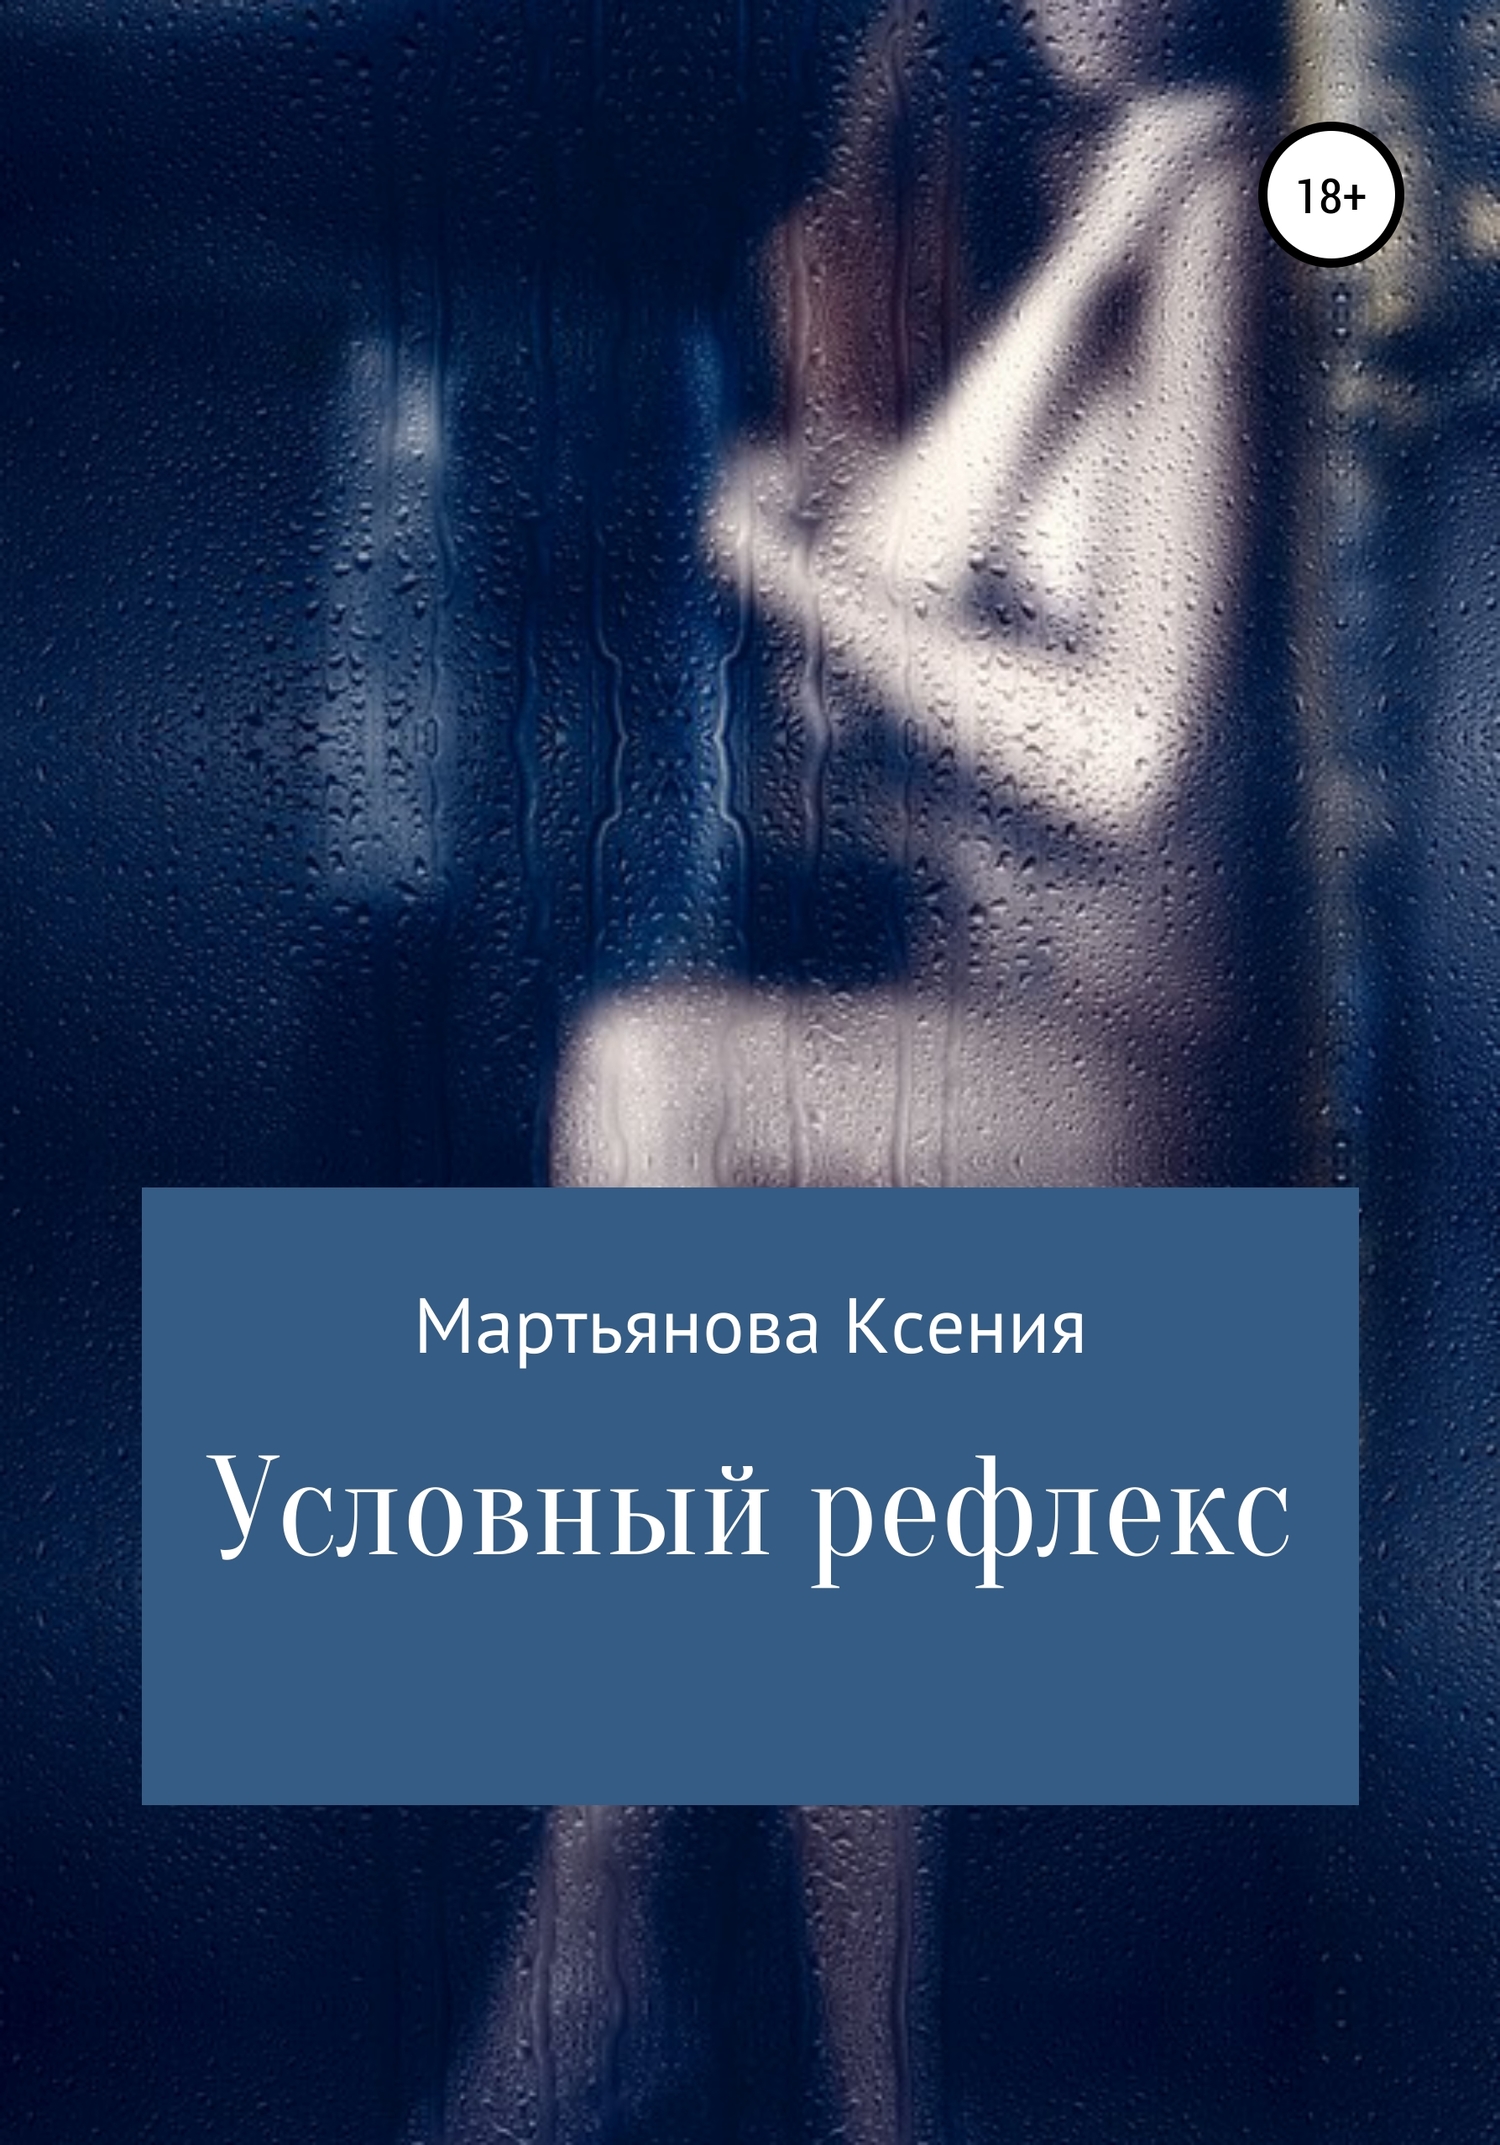 Условный рефлекс - Ксения Мартьянова